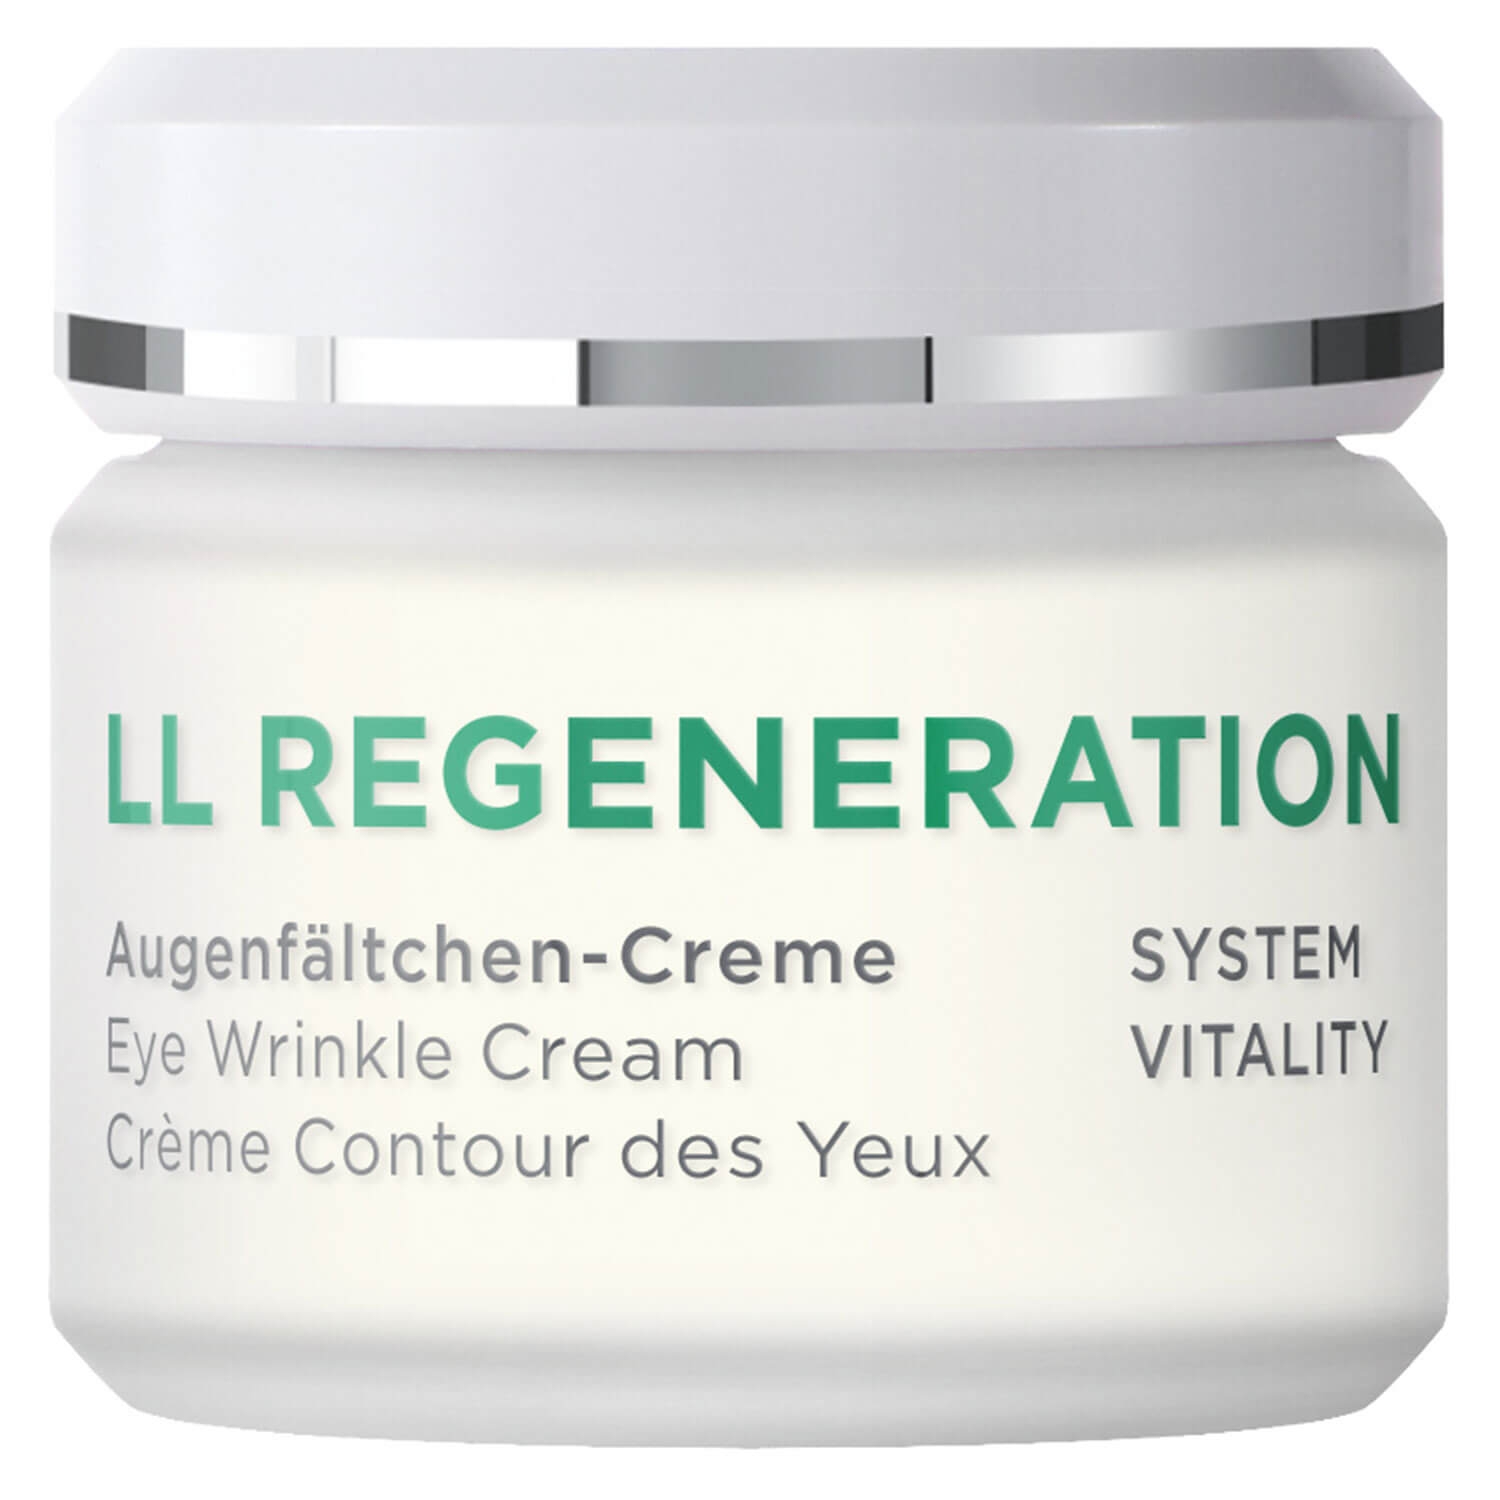 Produktbild von LL Regeneration - Augenfältchen-Creme